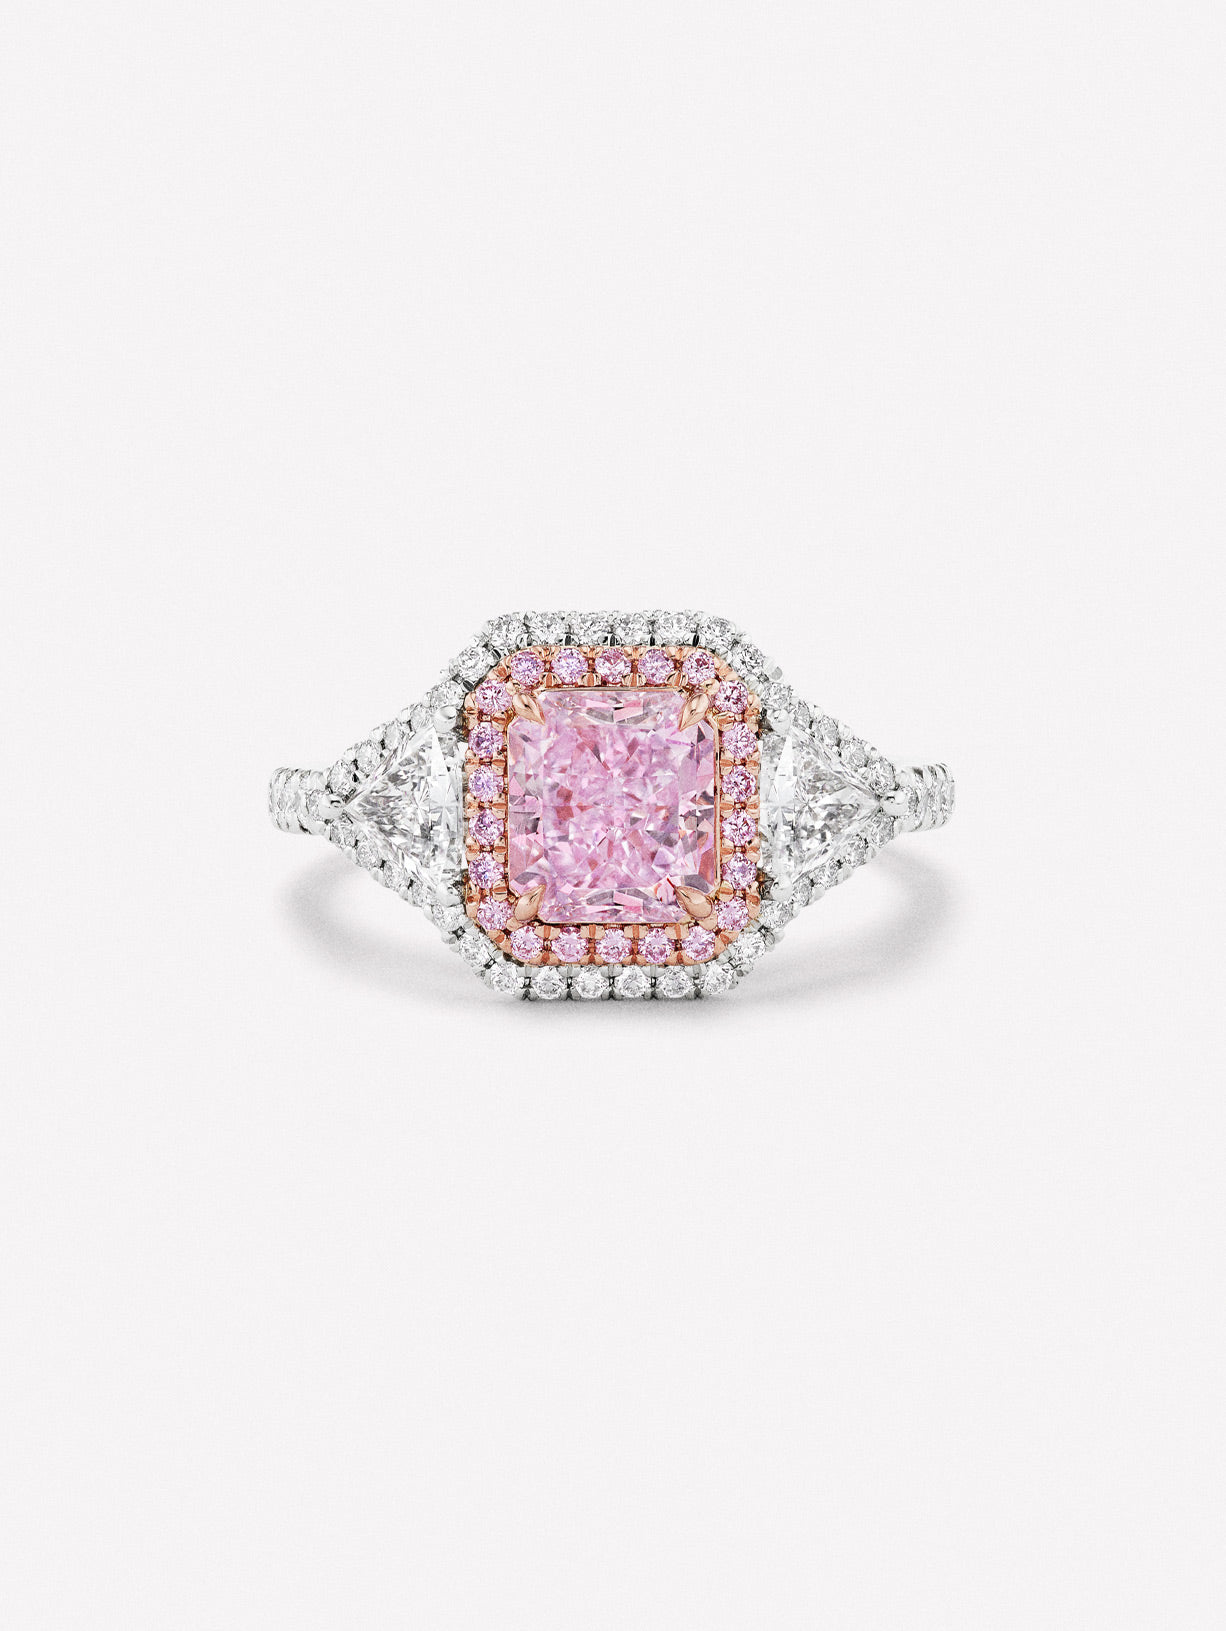 Radiant Shape Fancy Pink Purple Diamond 3 Stone Ring by JFINE